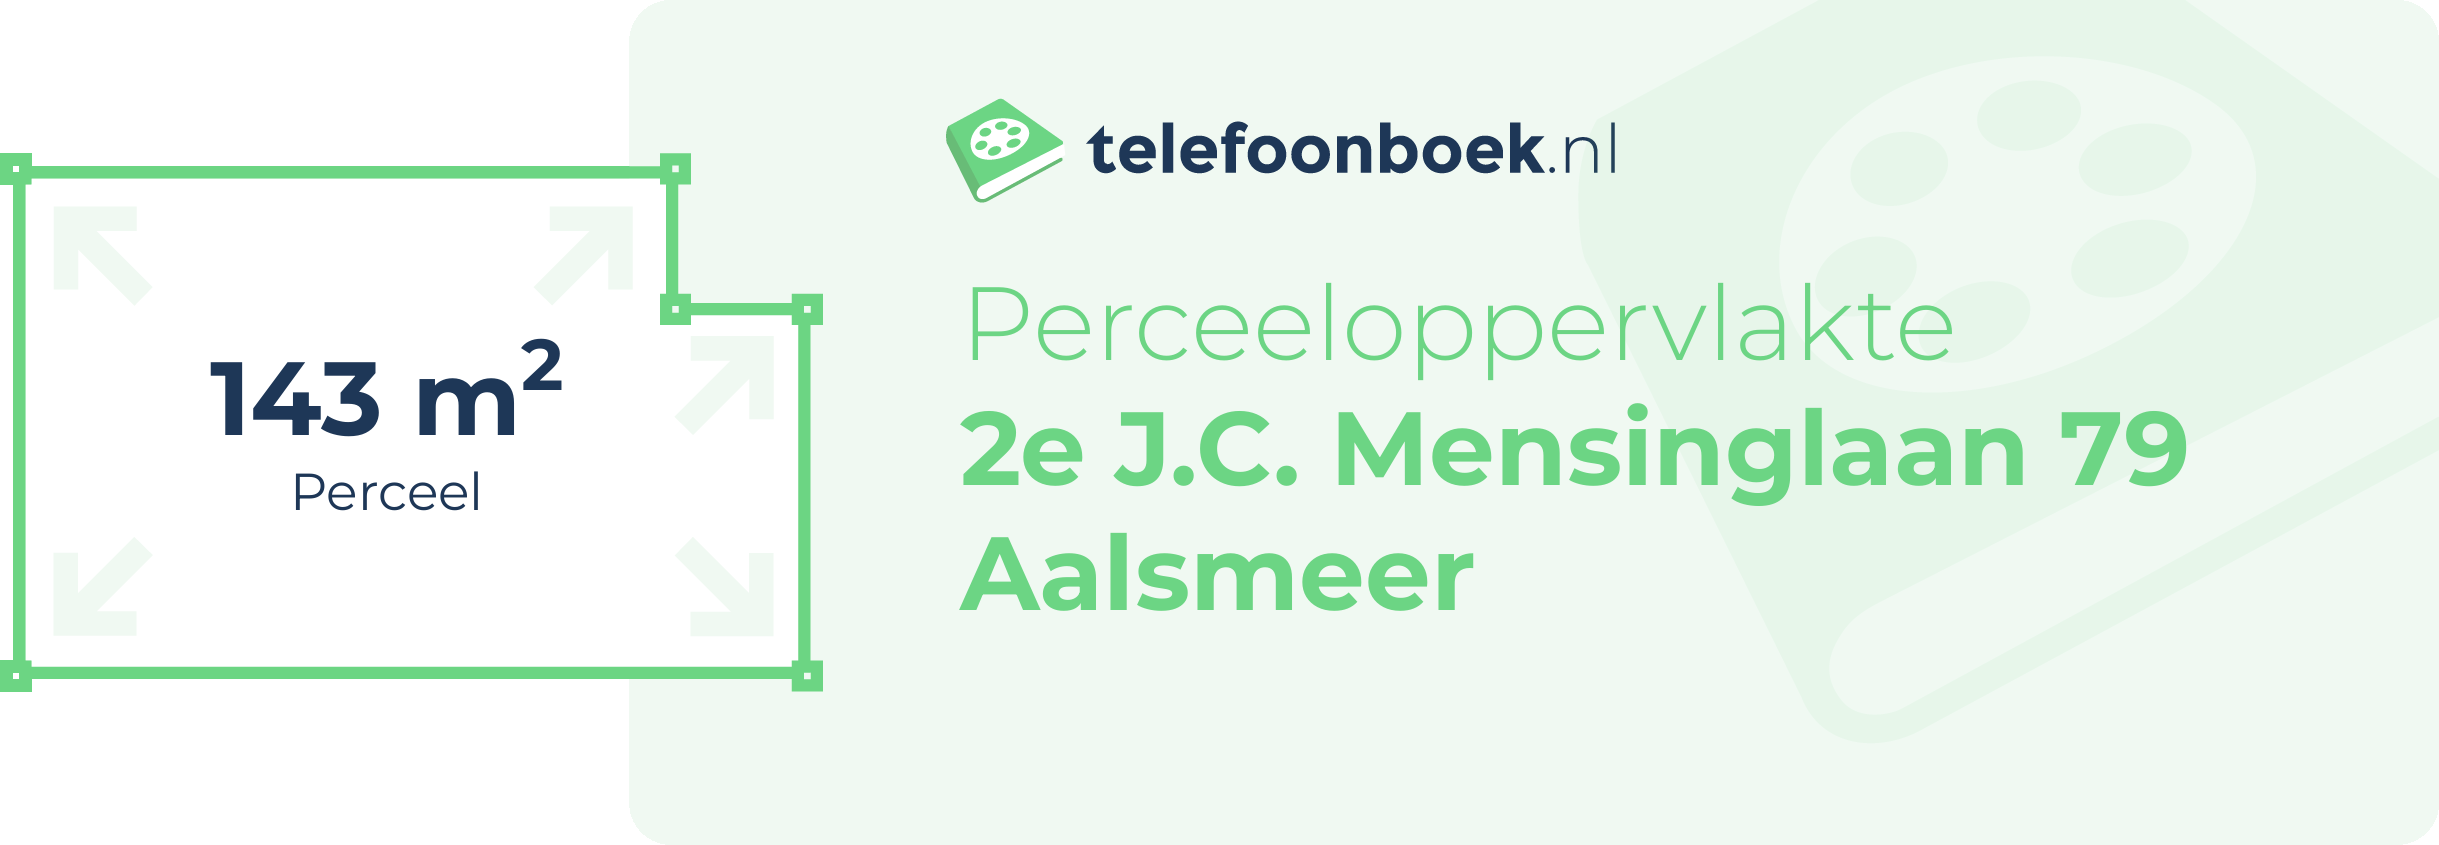 Perceeloppervlakte 2e J.C. Mensinglaan 79 Aalsmeer